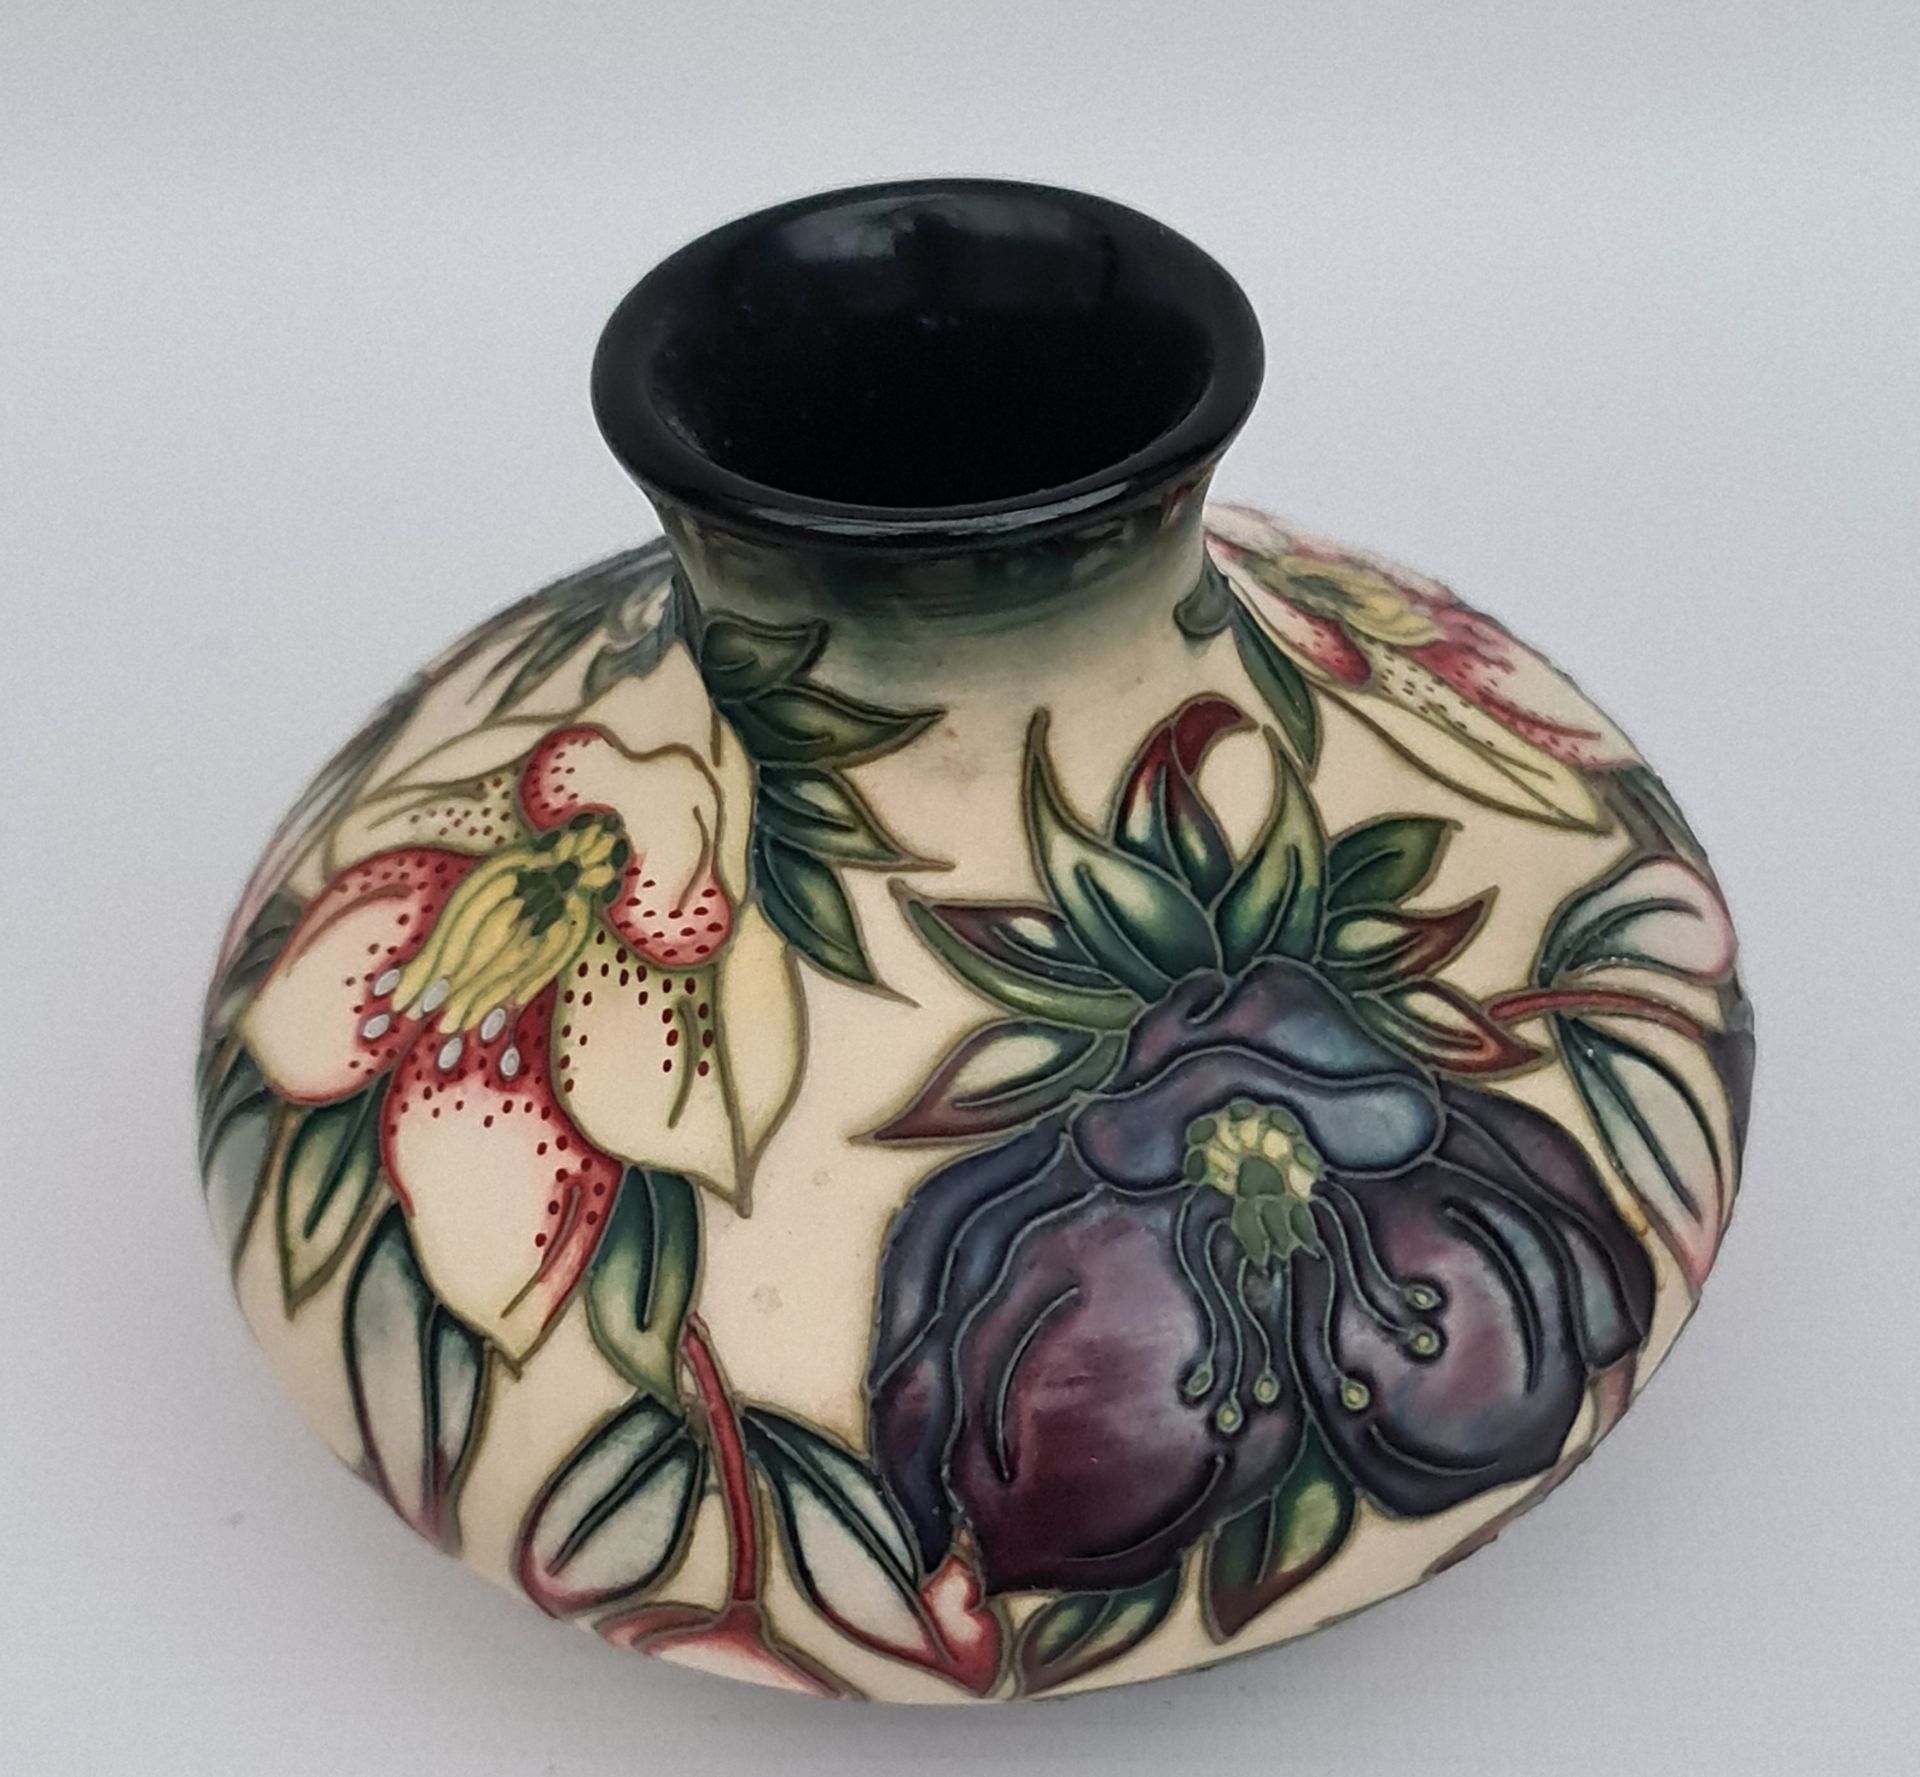 Vintage Moorcroft Pottery Vase 6" x 3" tall - Image 2 of 3